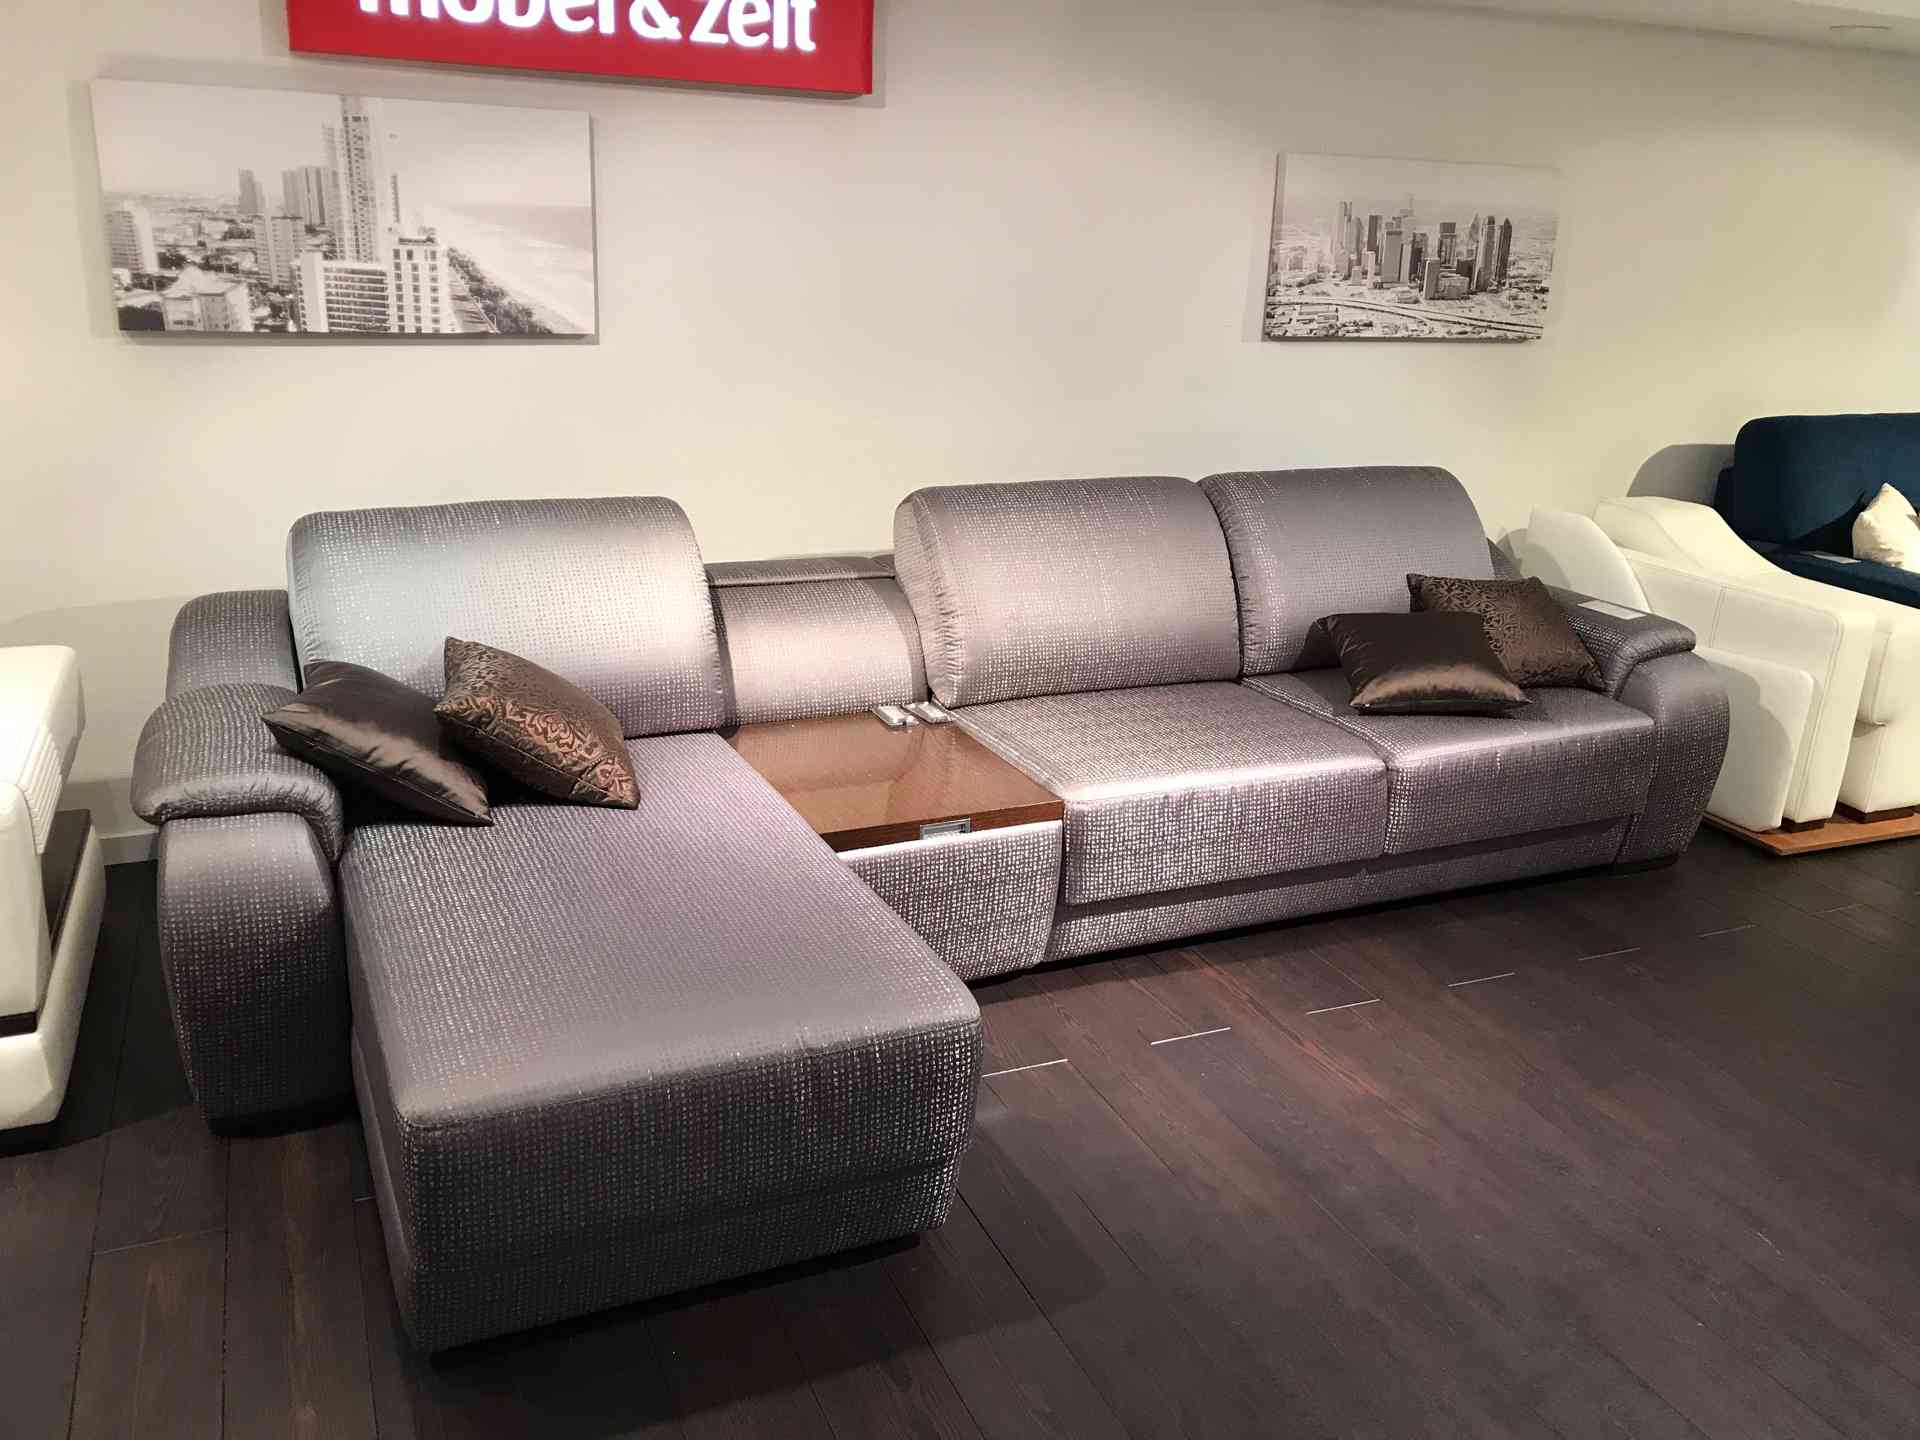 мебель mobel zeit официальный